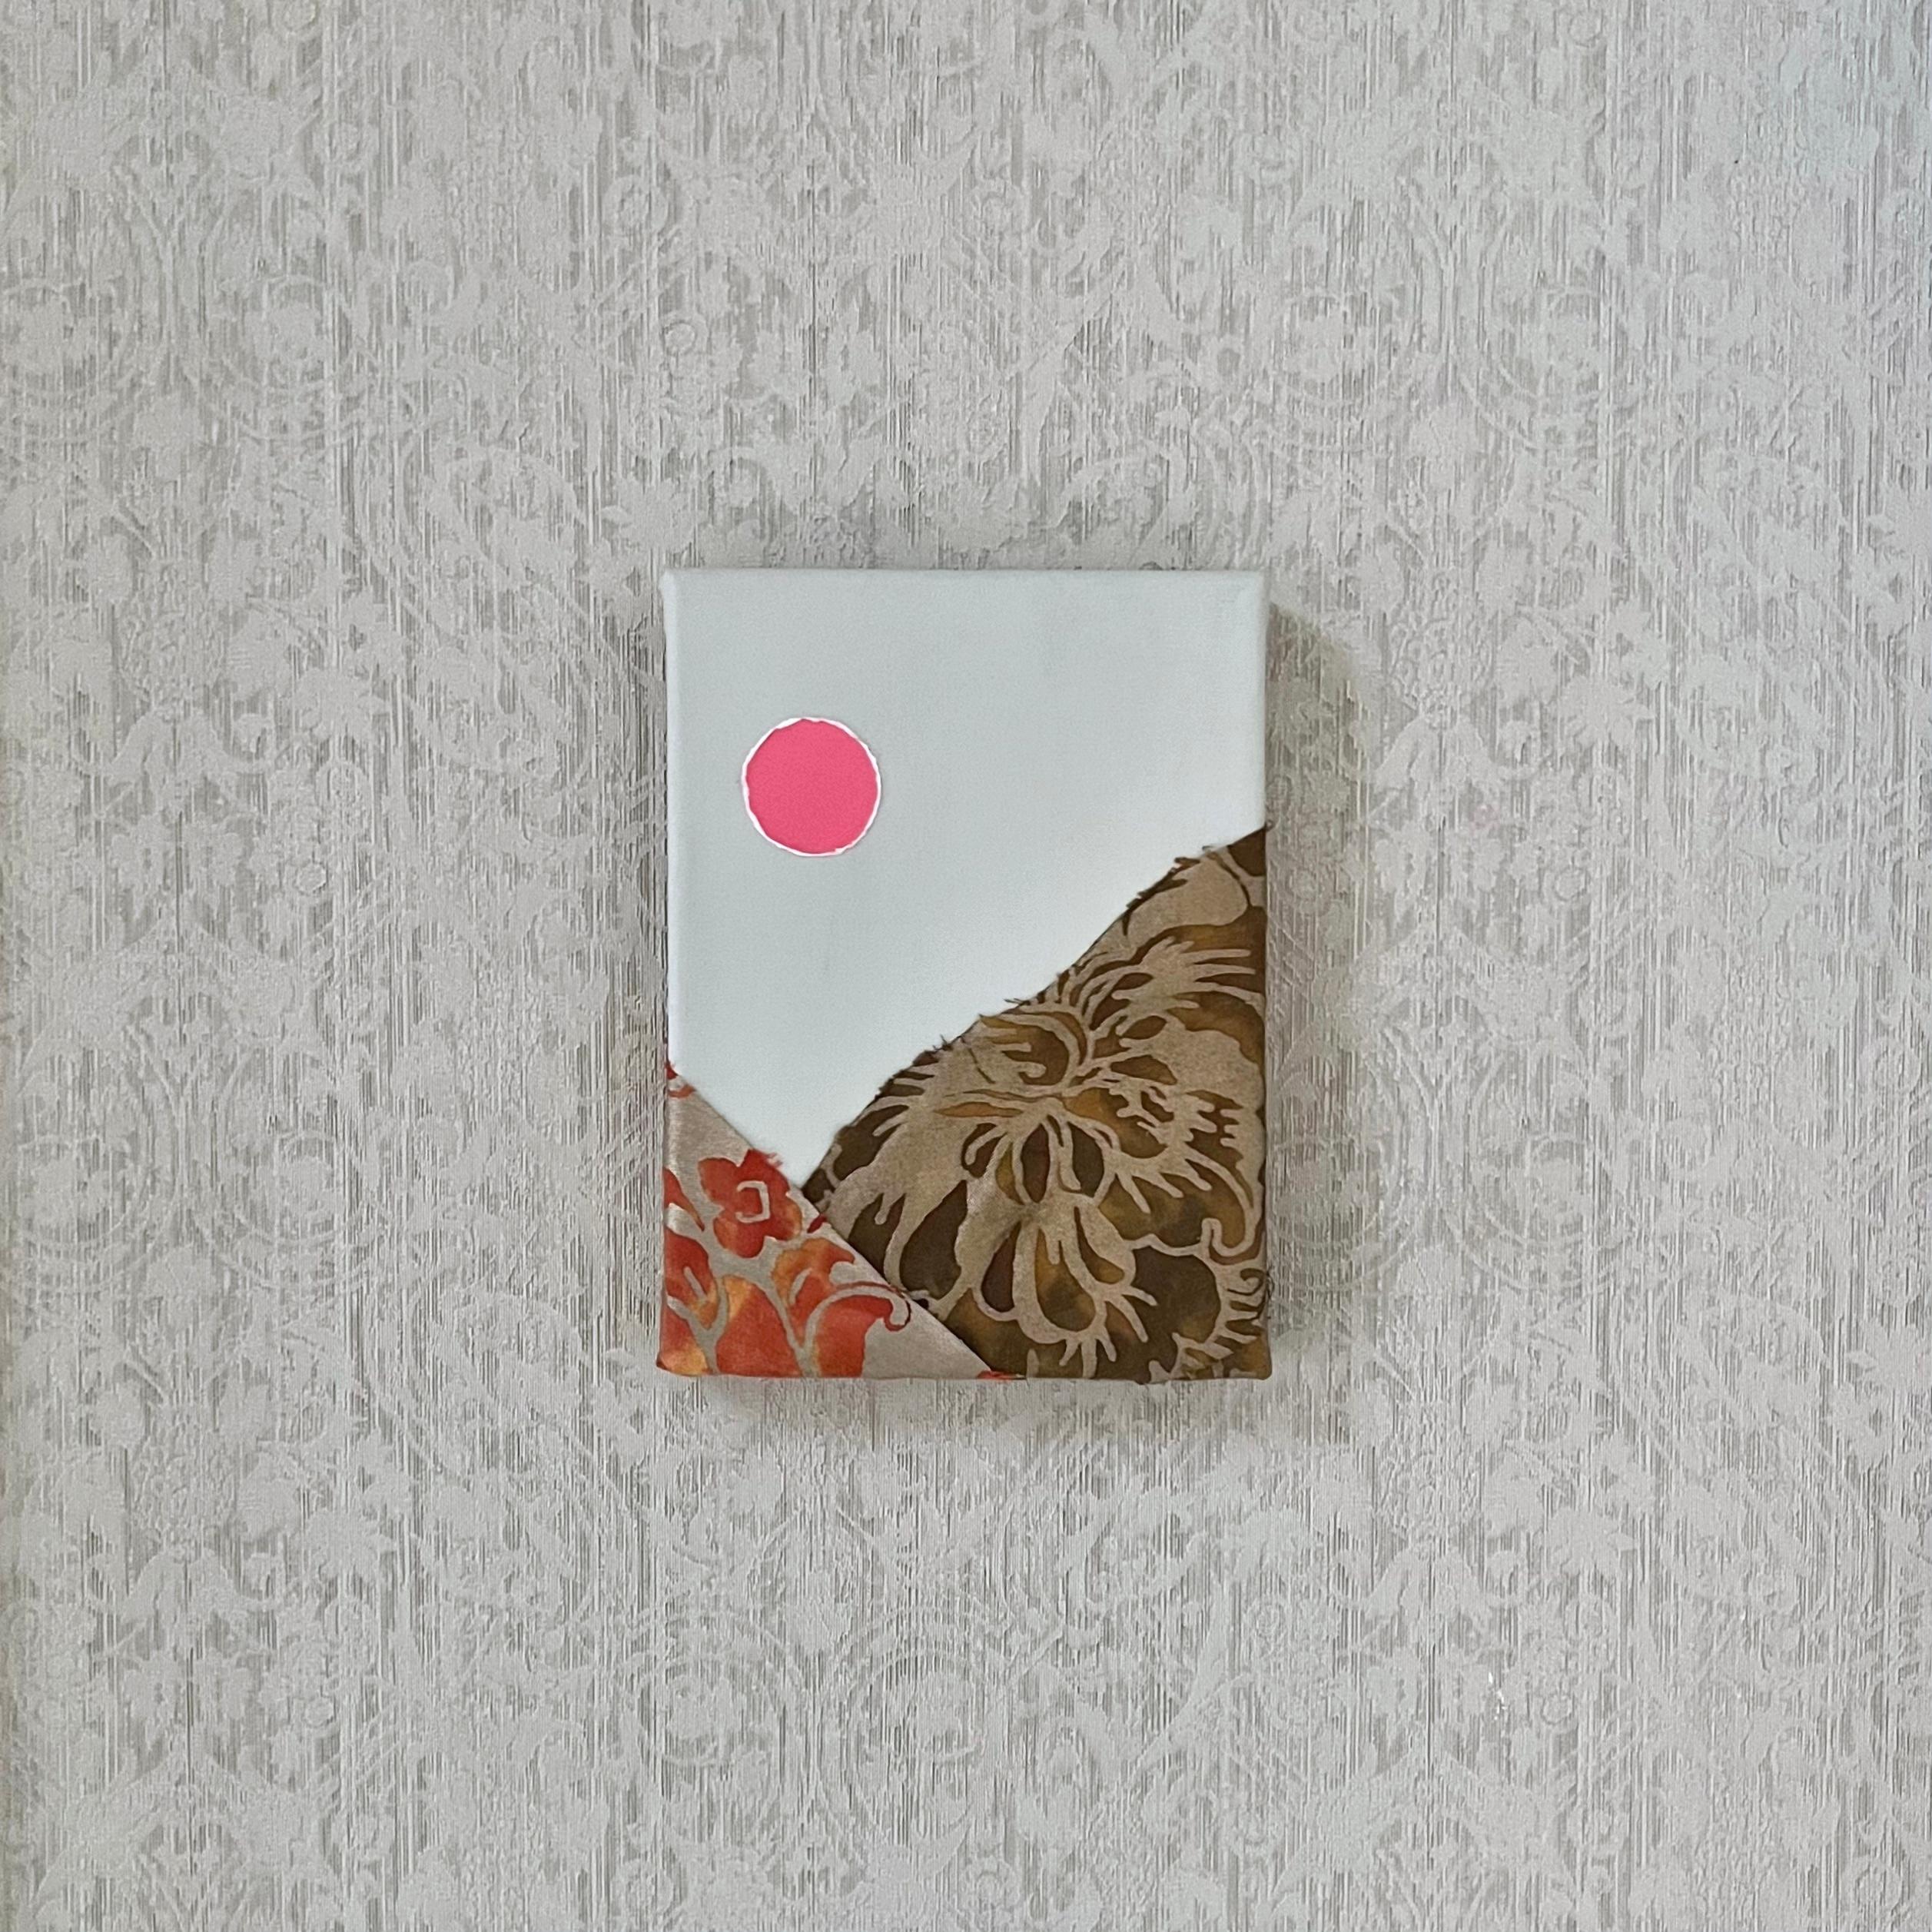 Un soleil rose - 6 "x8", série Fragments de Fortuny, peinture abstraite de paysage